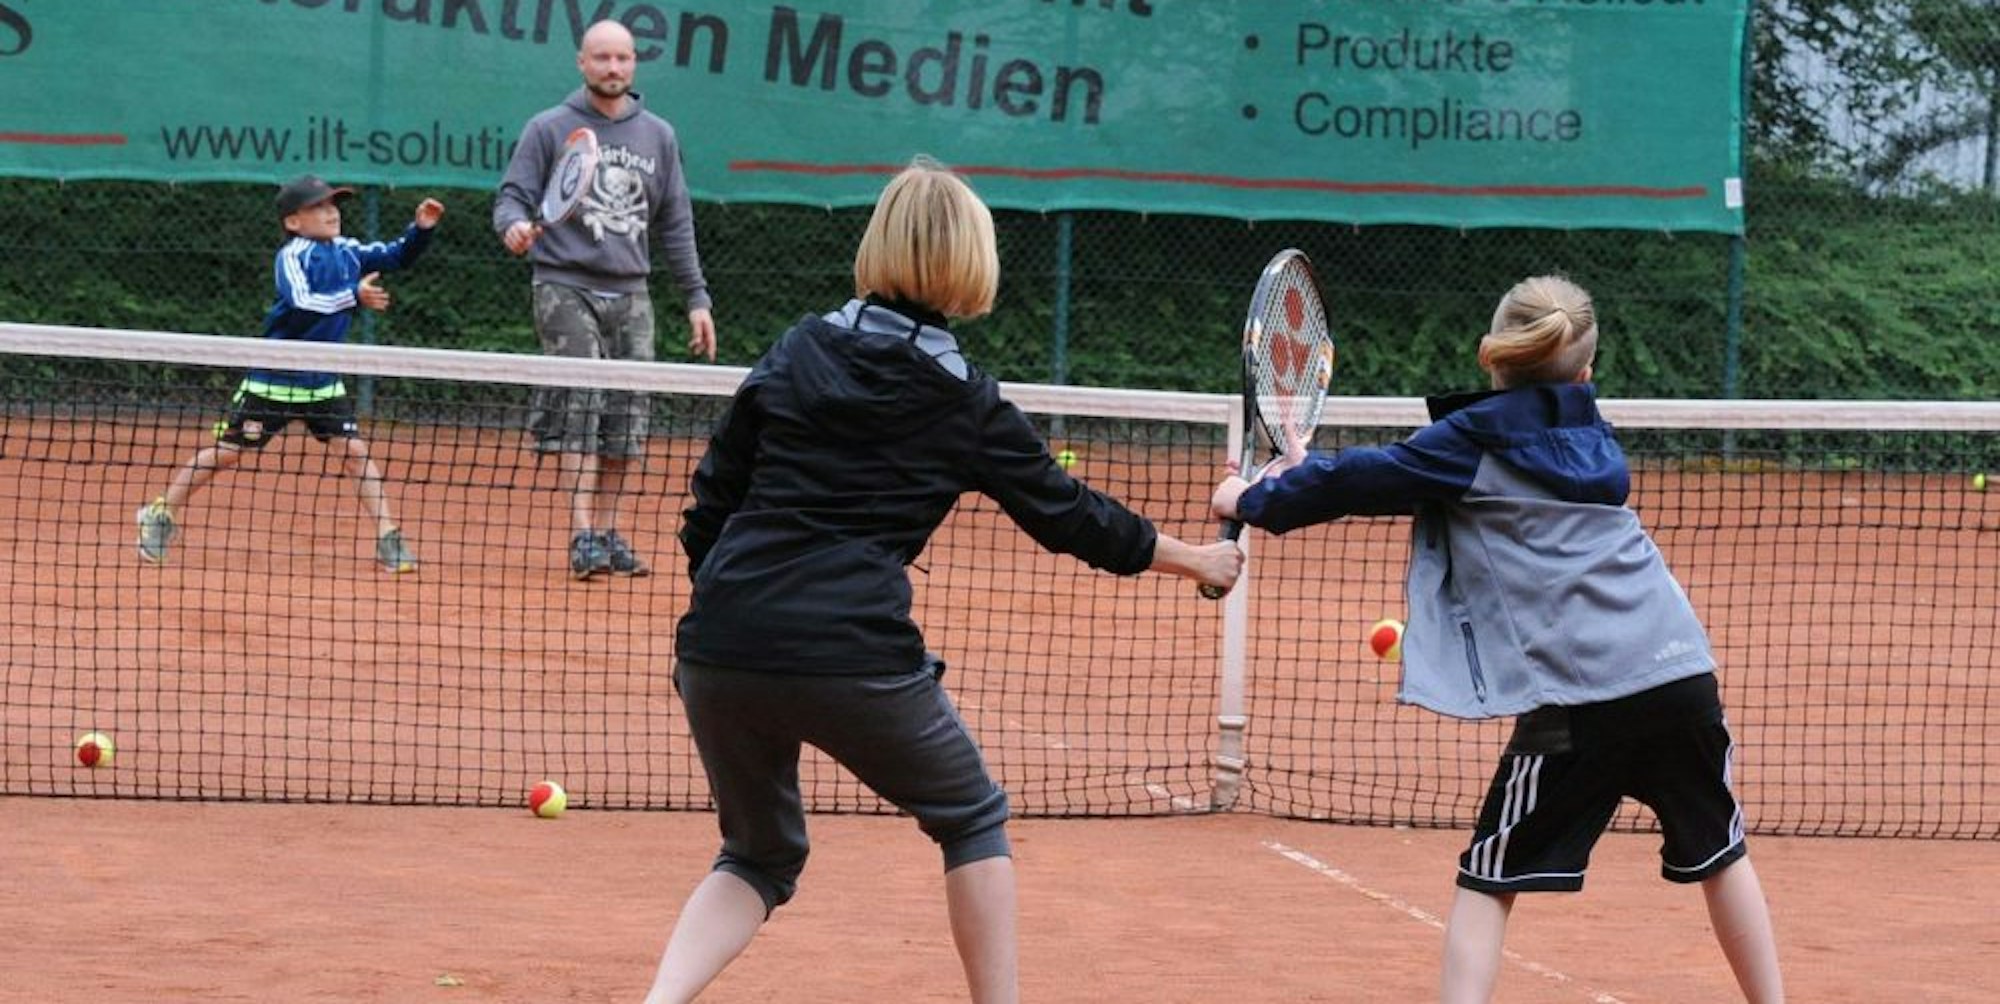 Beim Schnuppertag konnten Neugierige ihr Talent im Tennis in der Anlage Auf dem Schulberg testen.